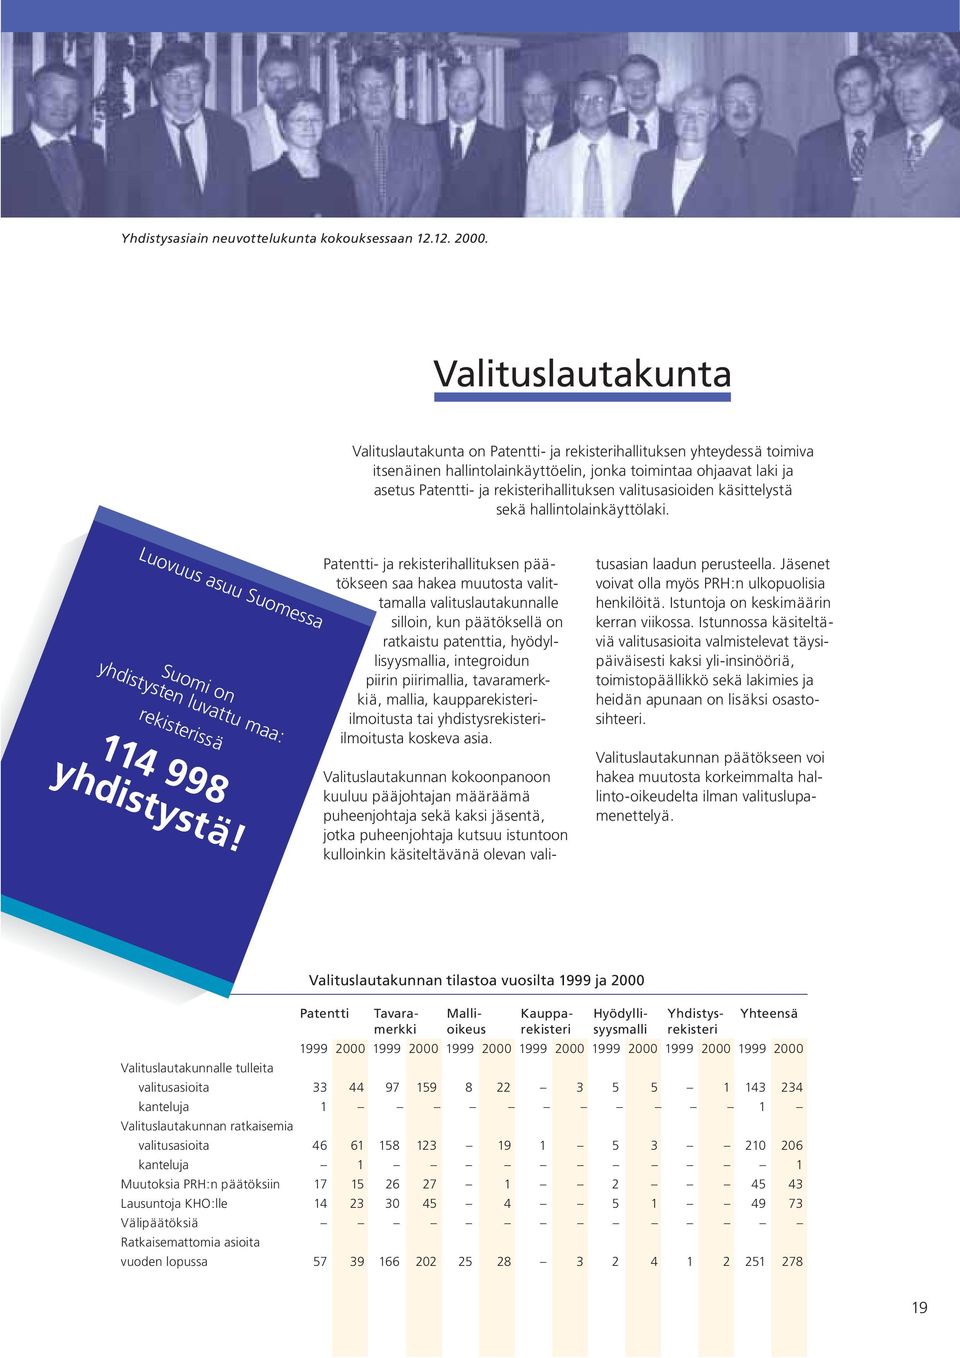 hallituksen valitusasioiden käsittelystä sekä hallintolainkäyttölaki. Luovuus asuu Suomessa Suomi on yhdistysten luvattu maa: rekisterissä 114 998 yhdistystä!